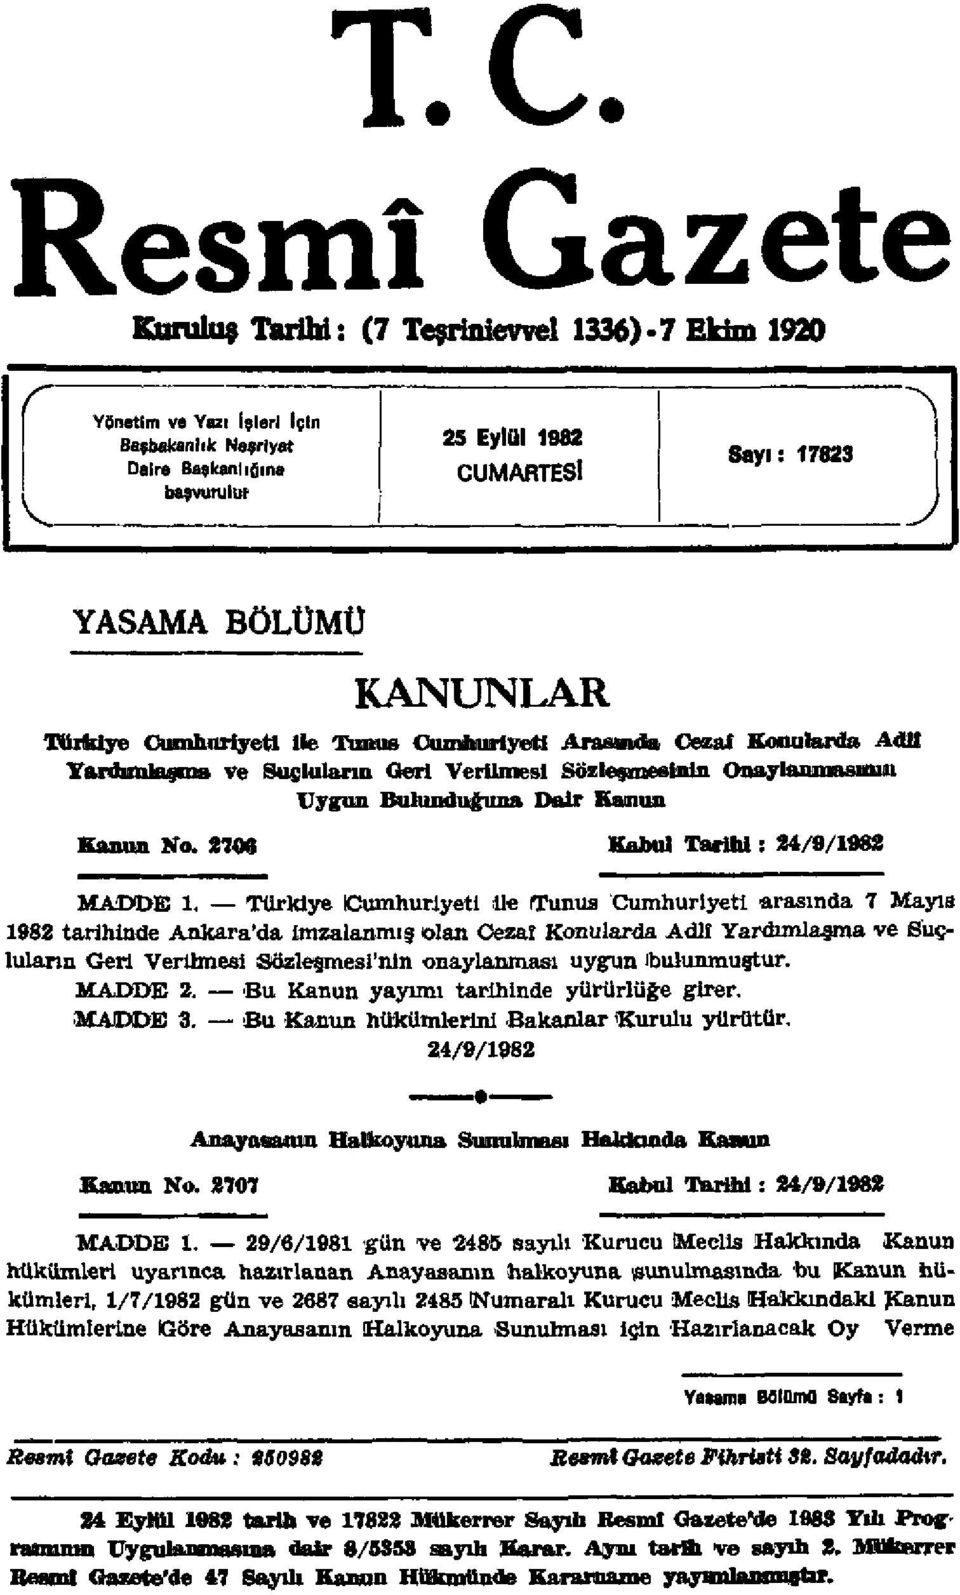 2708 Kabul Tarihi s 24/9/1982 MADDE 1.